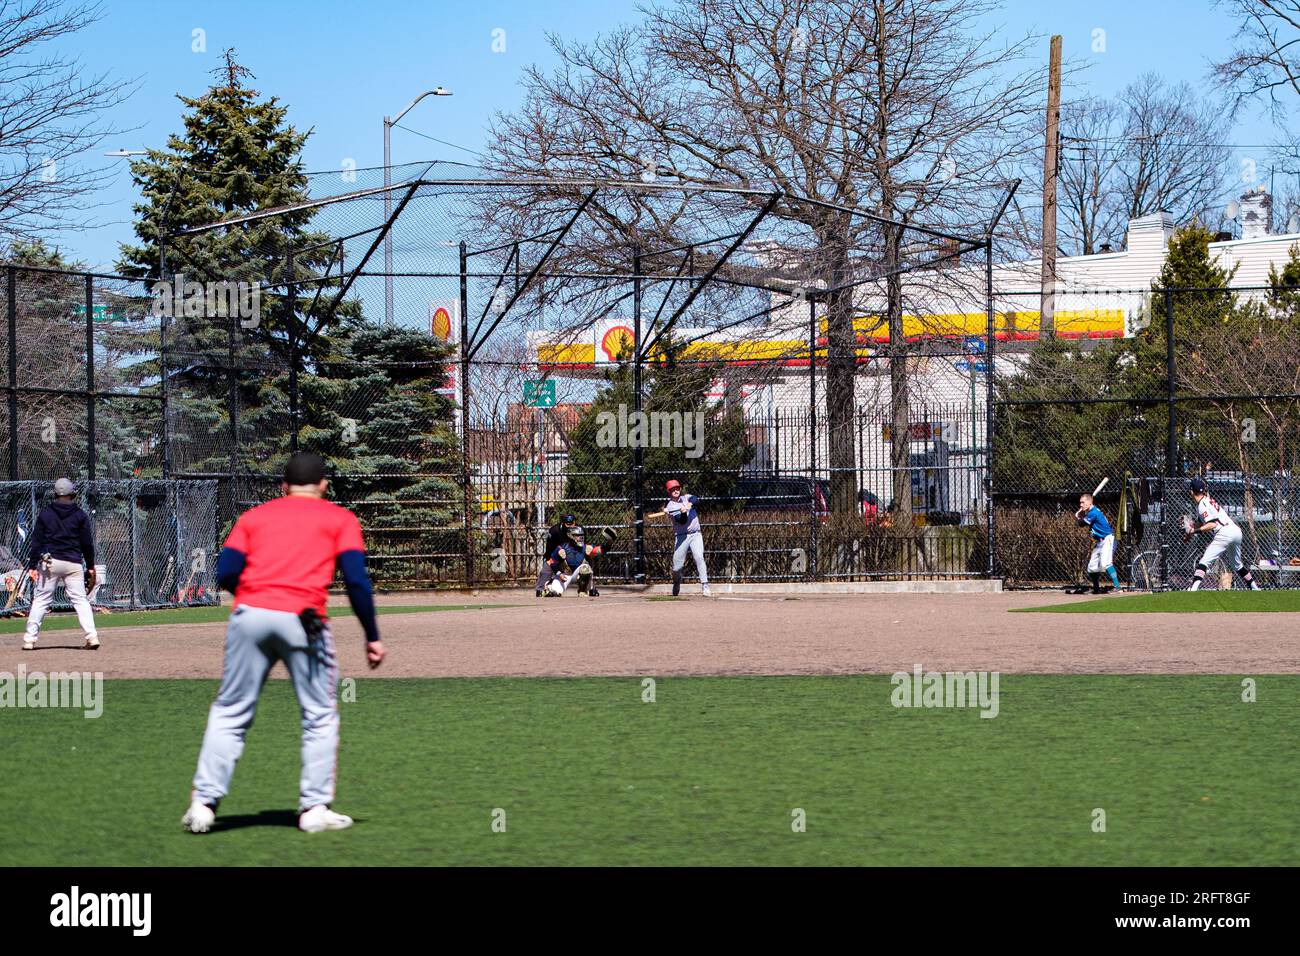 Amateur-Baseball unter der Sonne im Forest Park, Queens. Im Frühling geht es um Kameradschaft, während der Teig sich verbindet. Lebendiges Spiel im Freien und Gemeinschaftsgeist Stockfoto